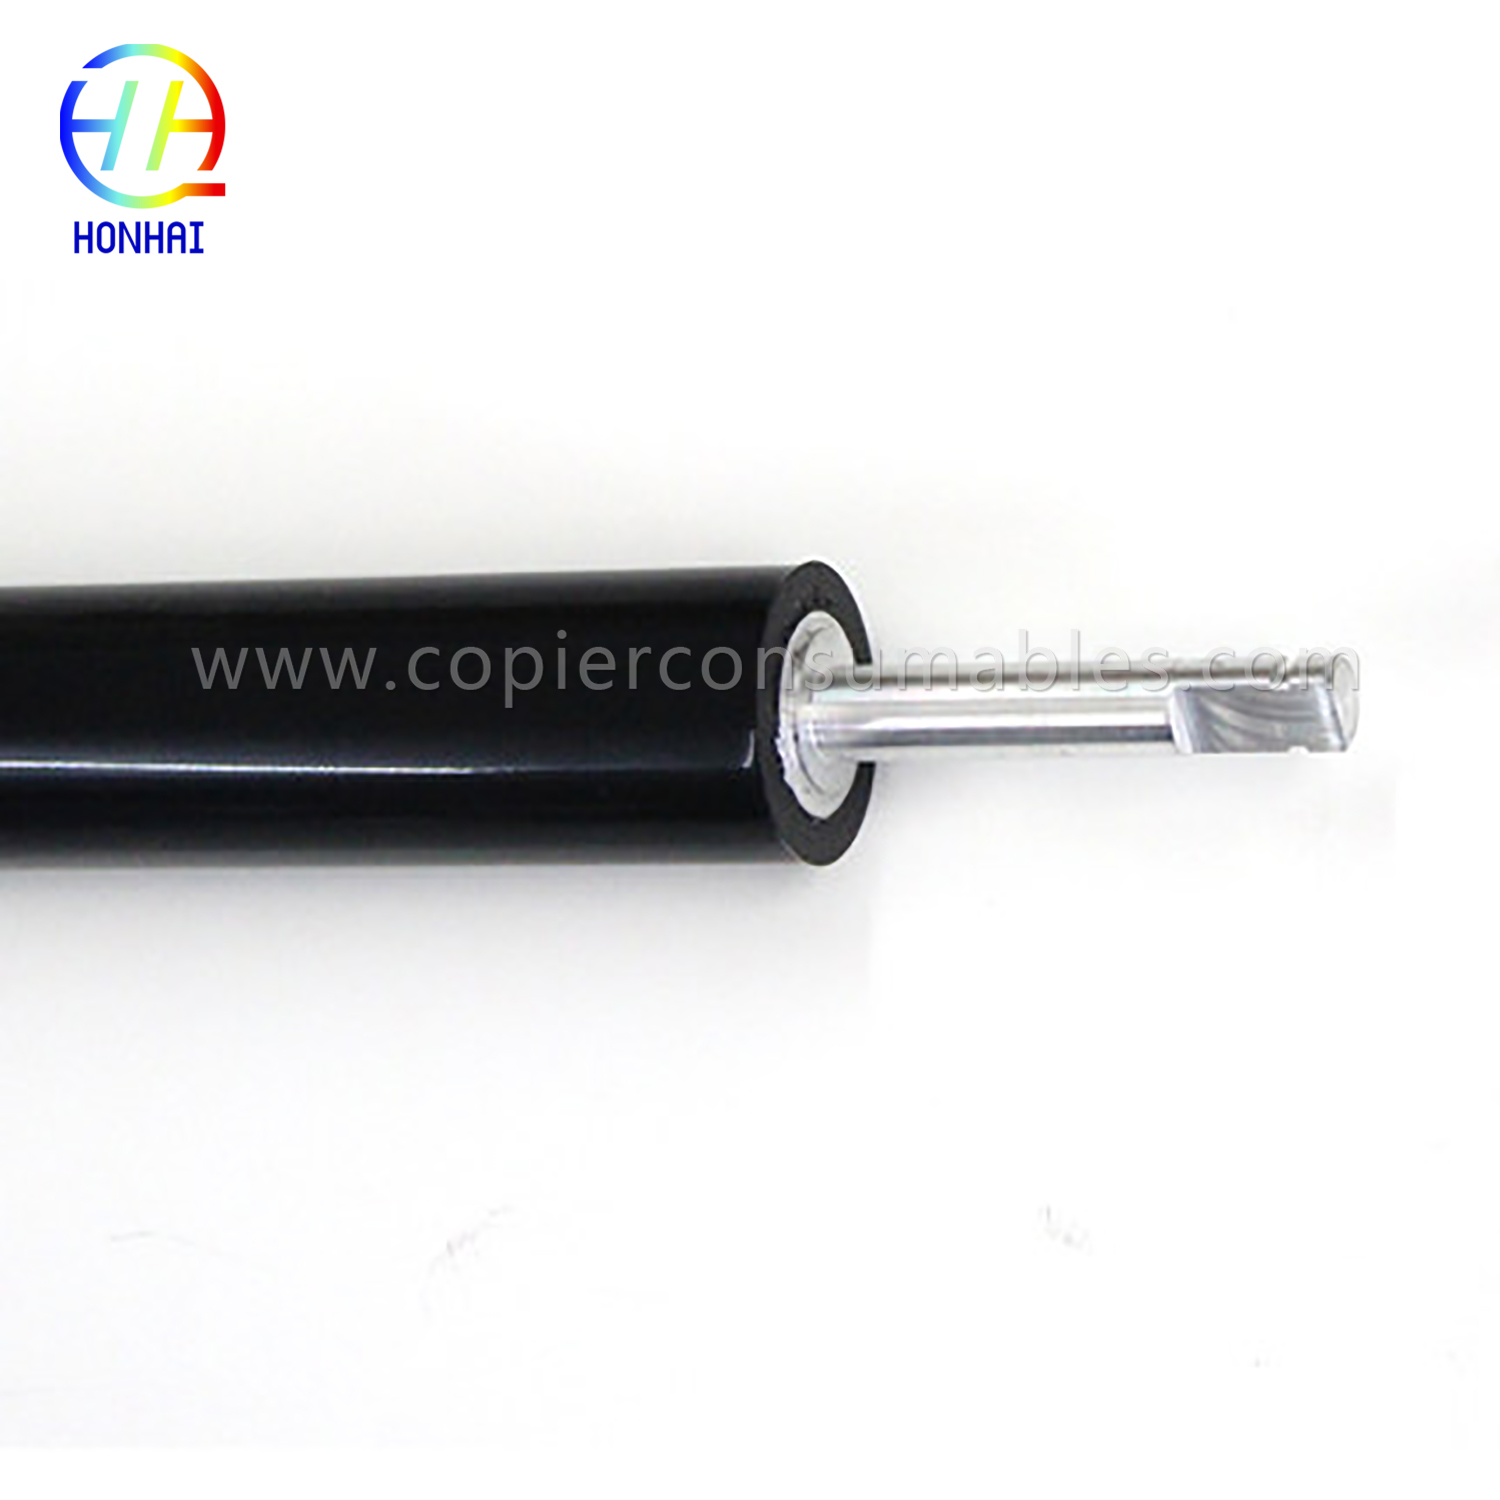 Lower Pressure Roller for HP Color LaserJet 4700 4730 CM4730 CP4005 (LPR-4700) (3) 拷贝